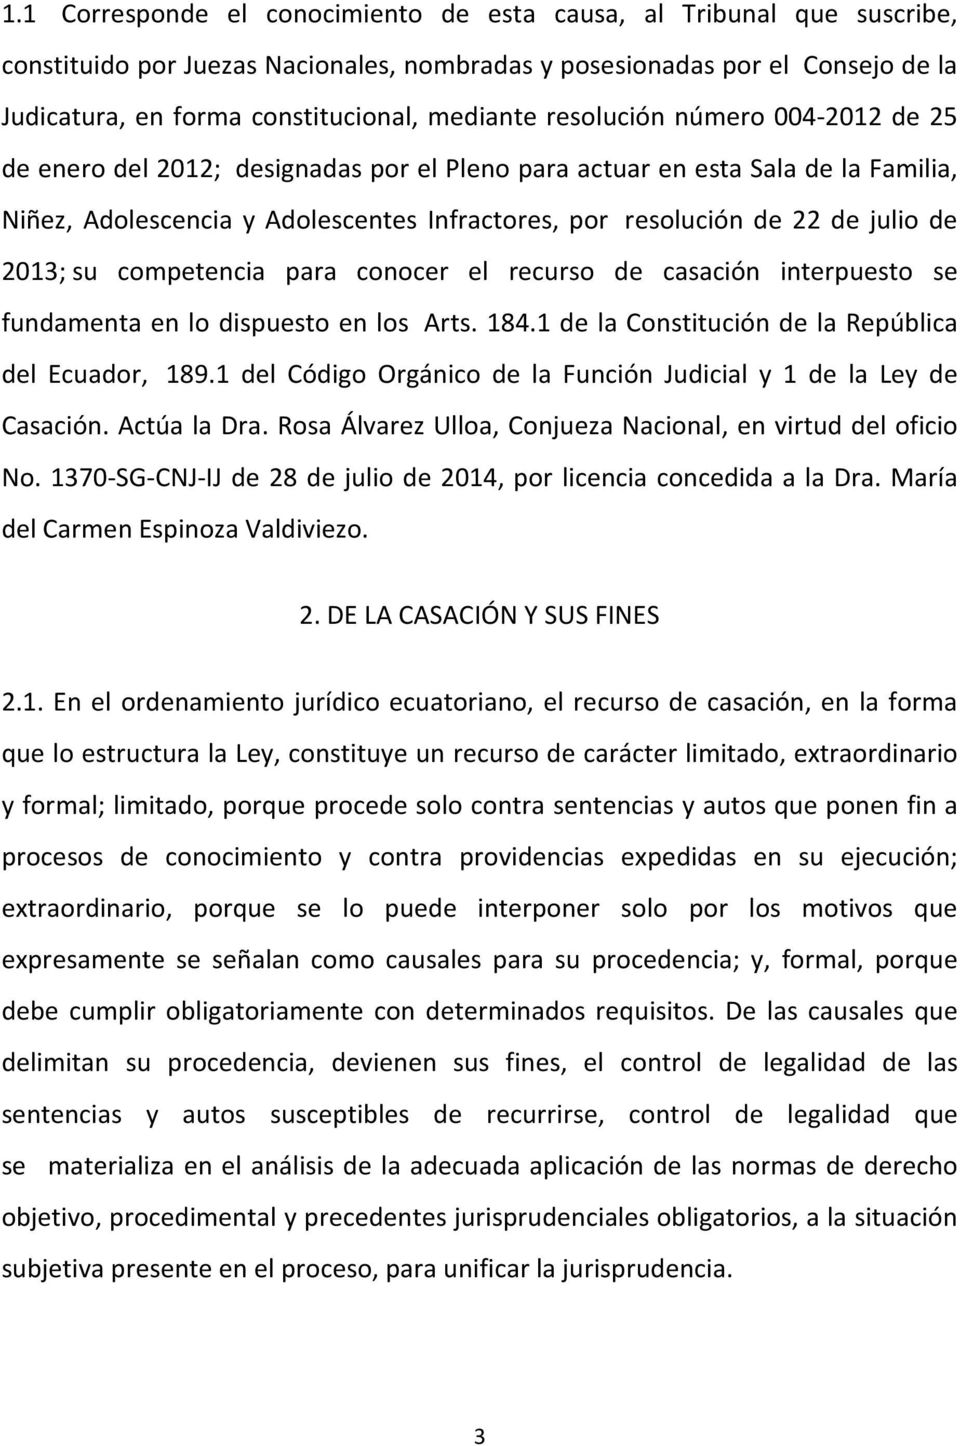 2013; su competencia para conocer el recurso de casación interpuesto se fundamenta en lo dispuesto en los Arts. 184.1 de la Constitución de la República del Ecuador, 189.